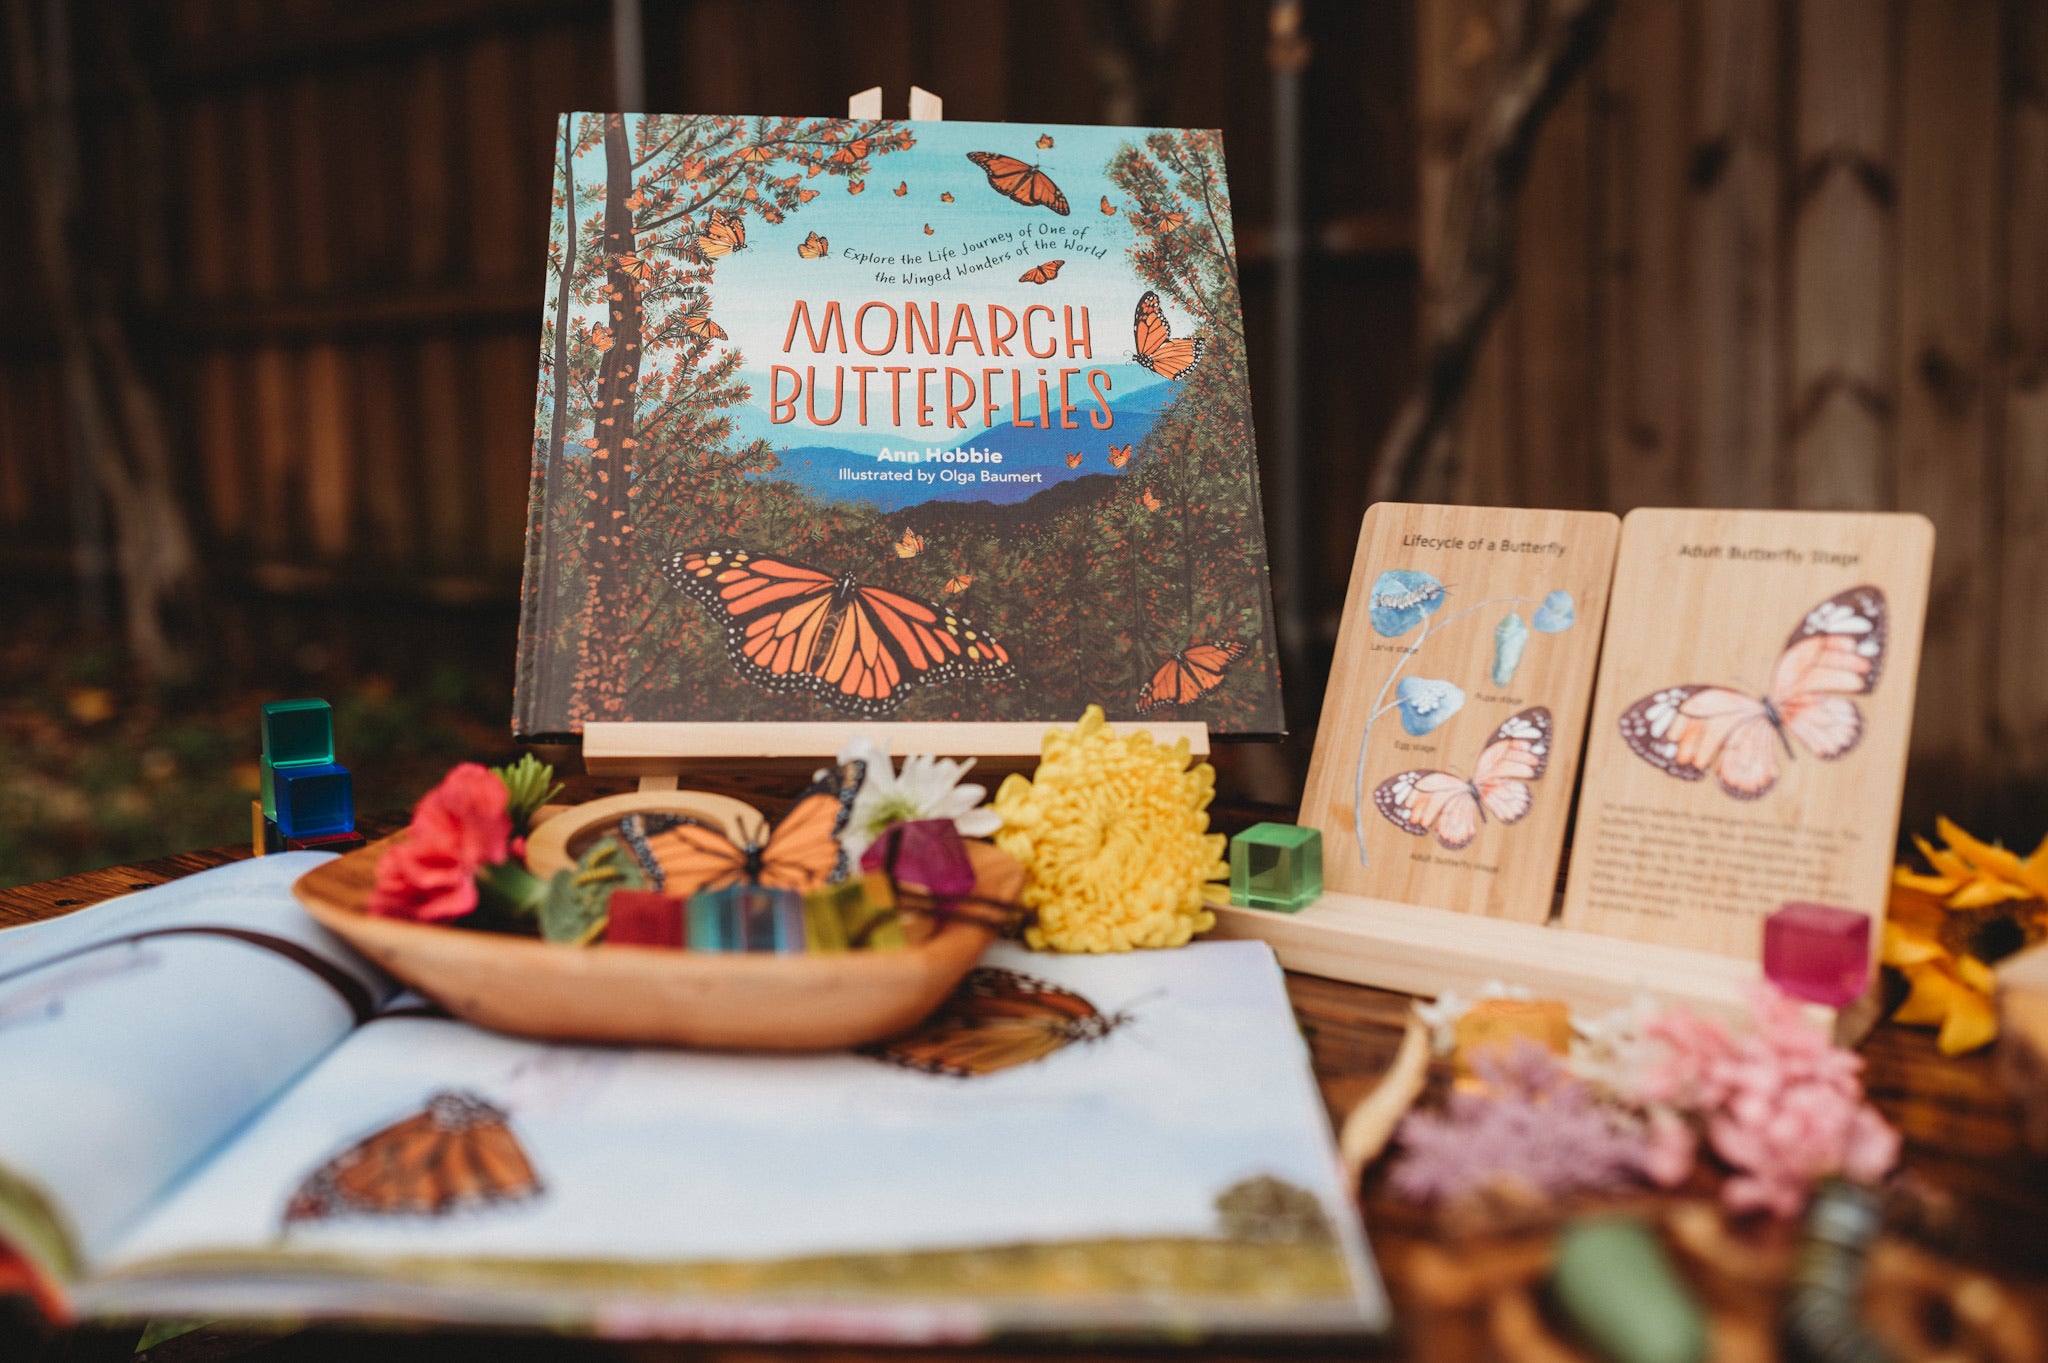 Monarch Butterflies Book by Ann Hobbie